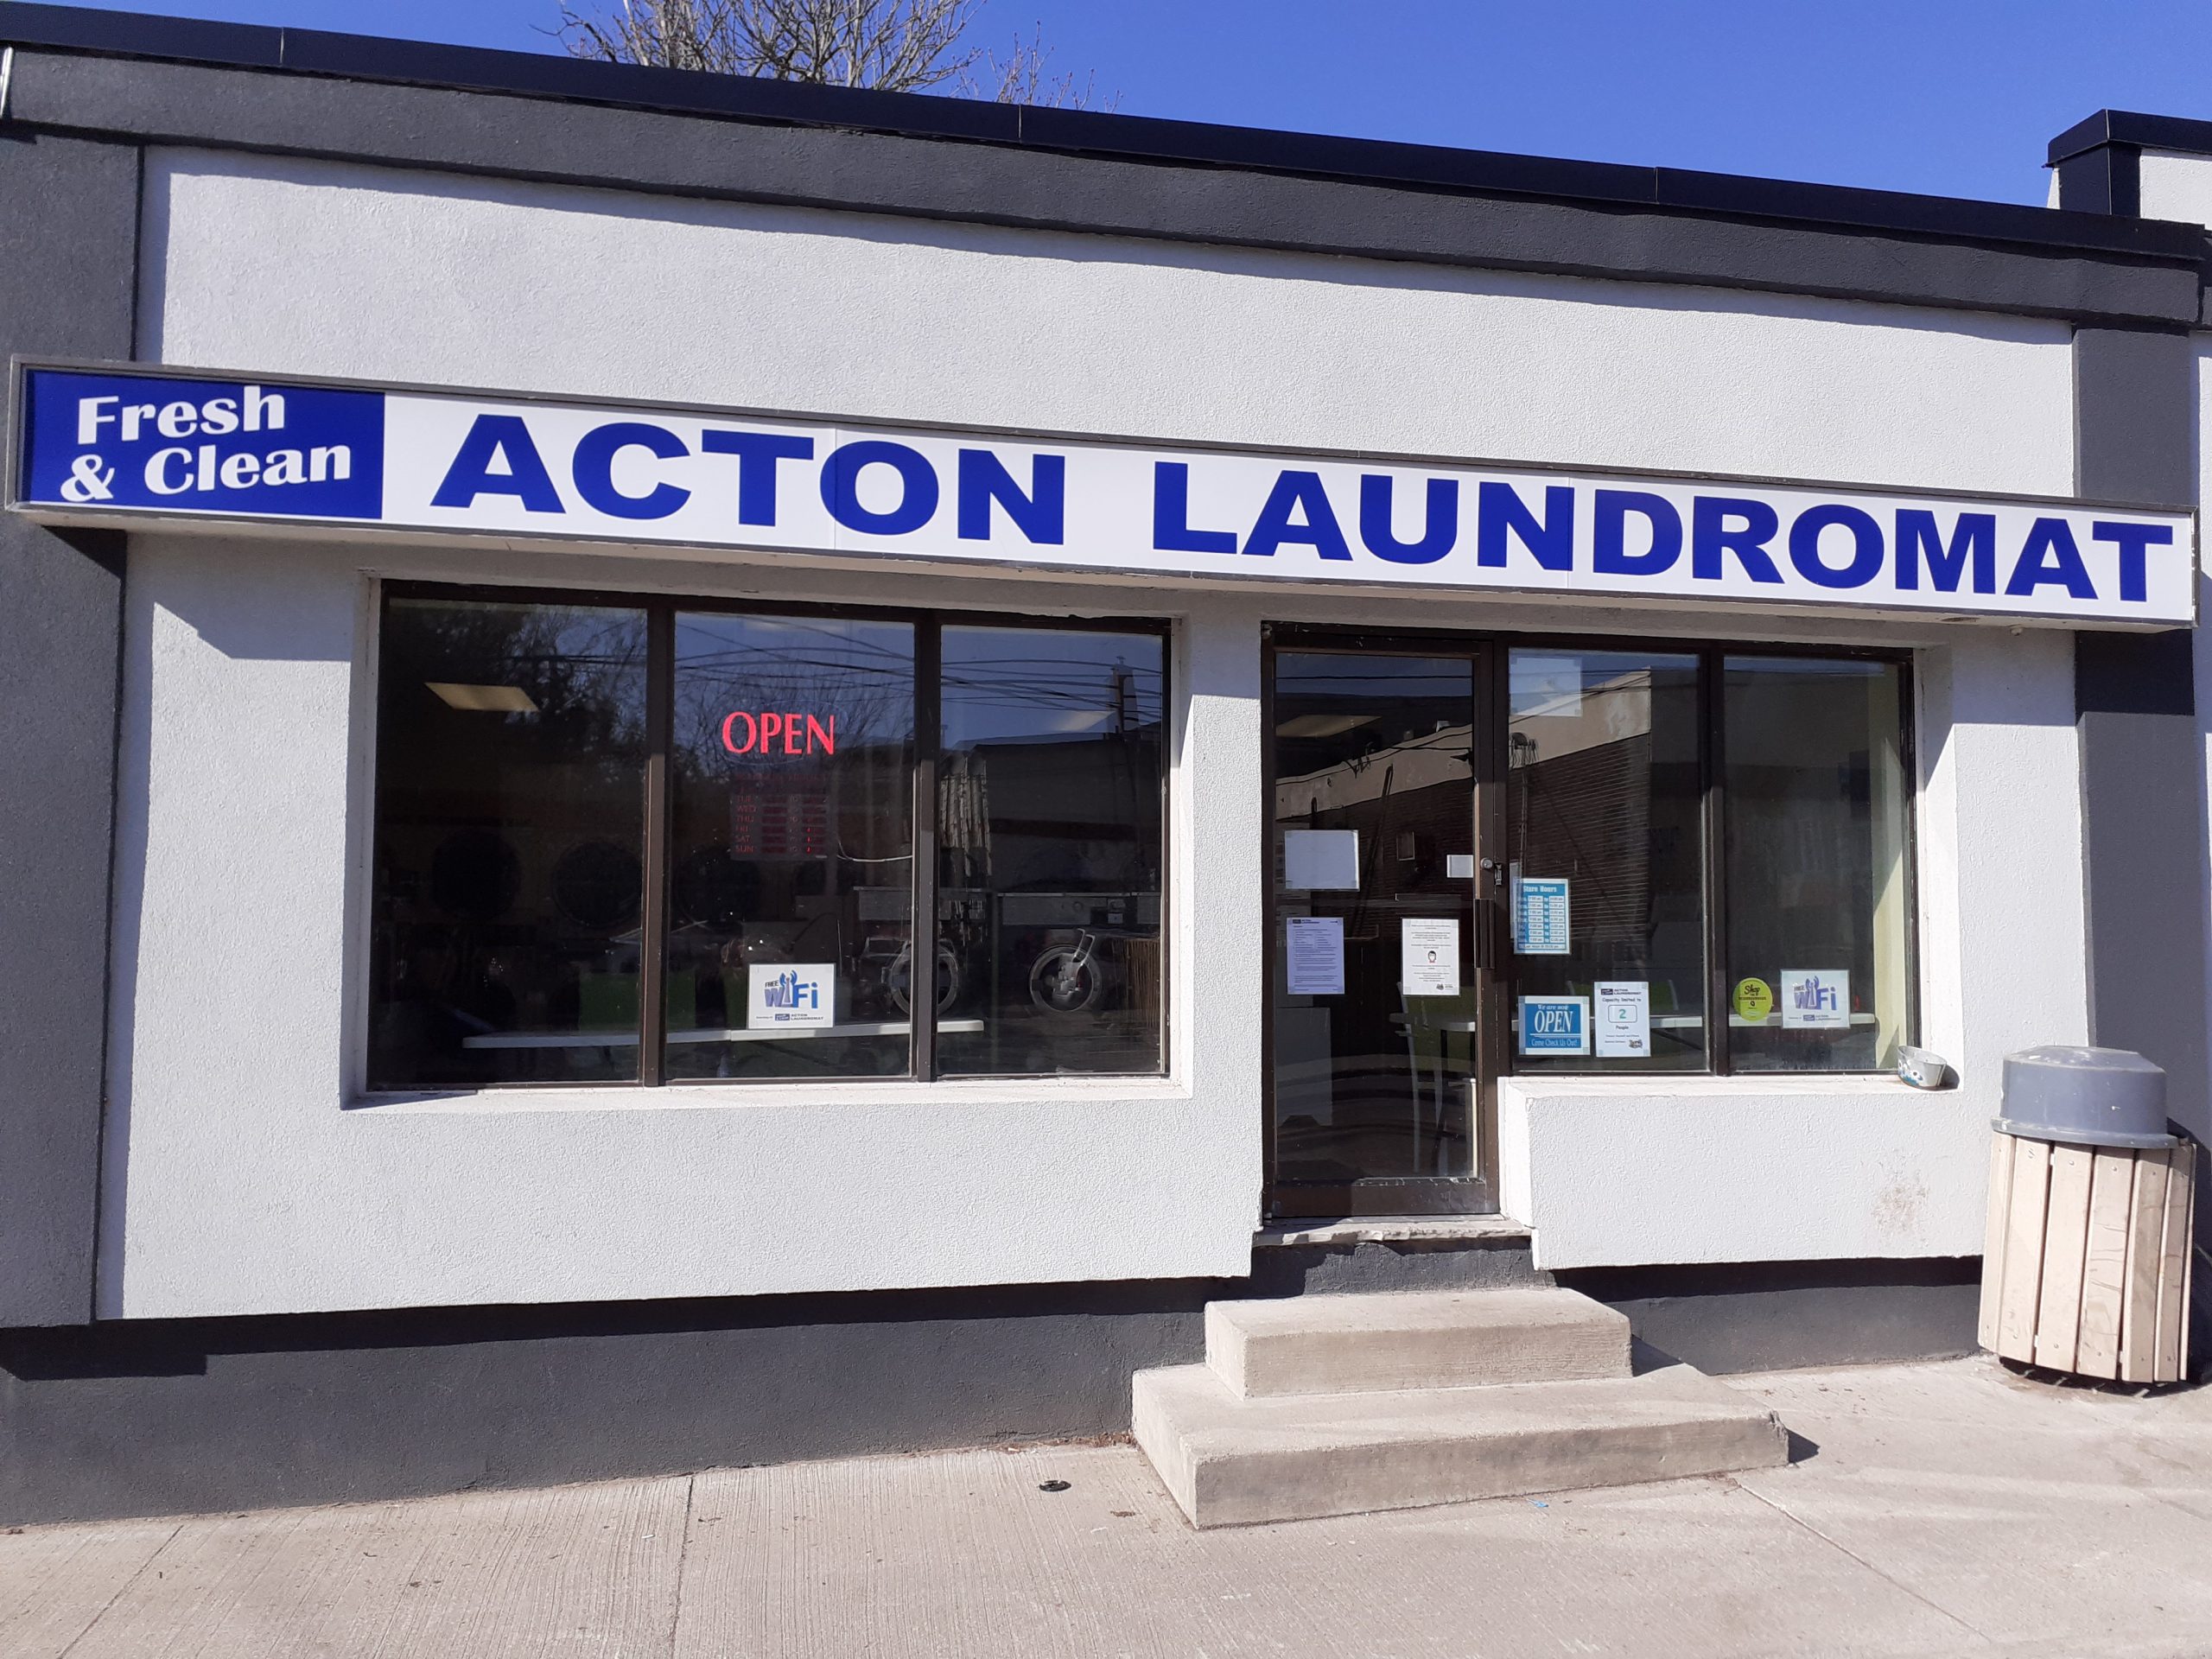 Fresh & Clean Acton Laundromat